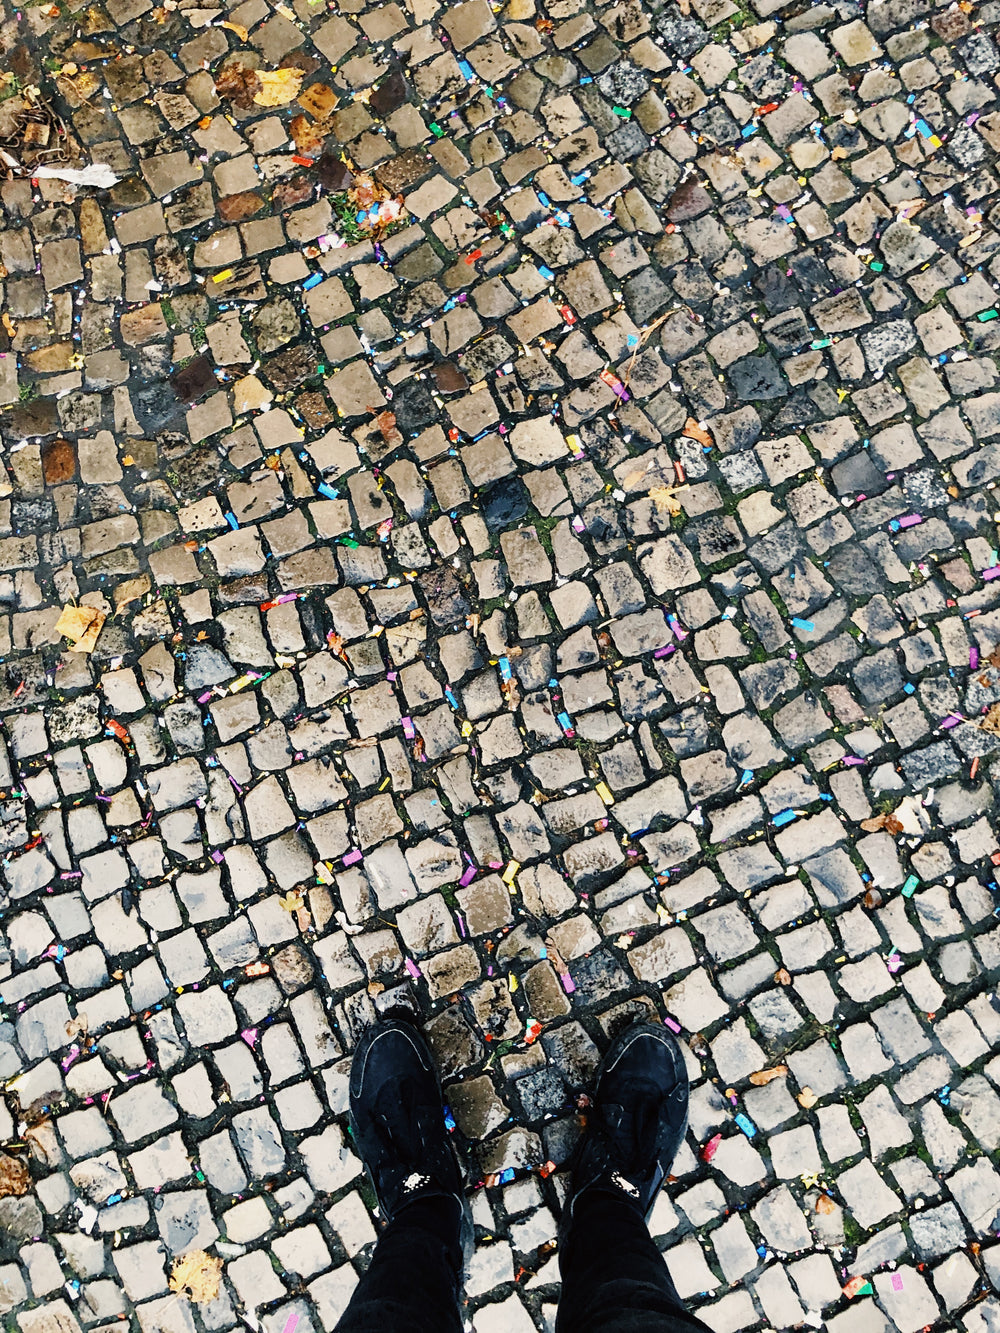 cobblestone streets and littered confetti